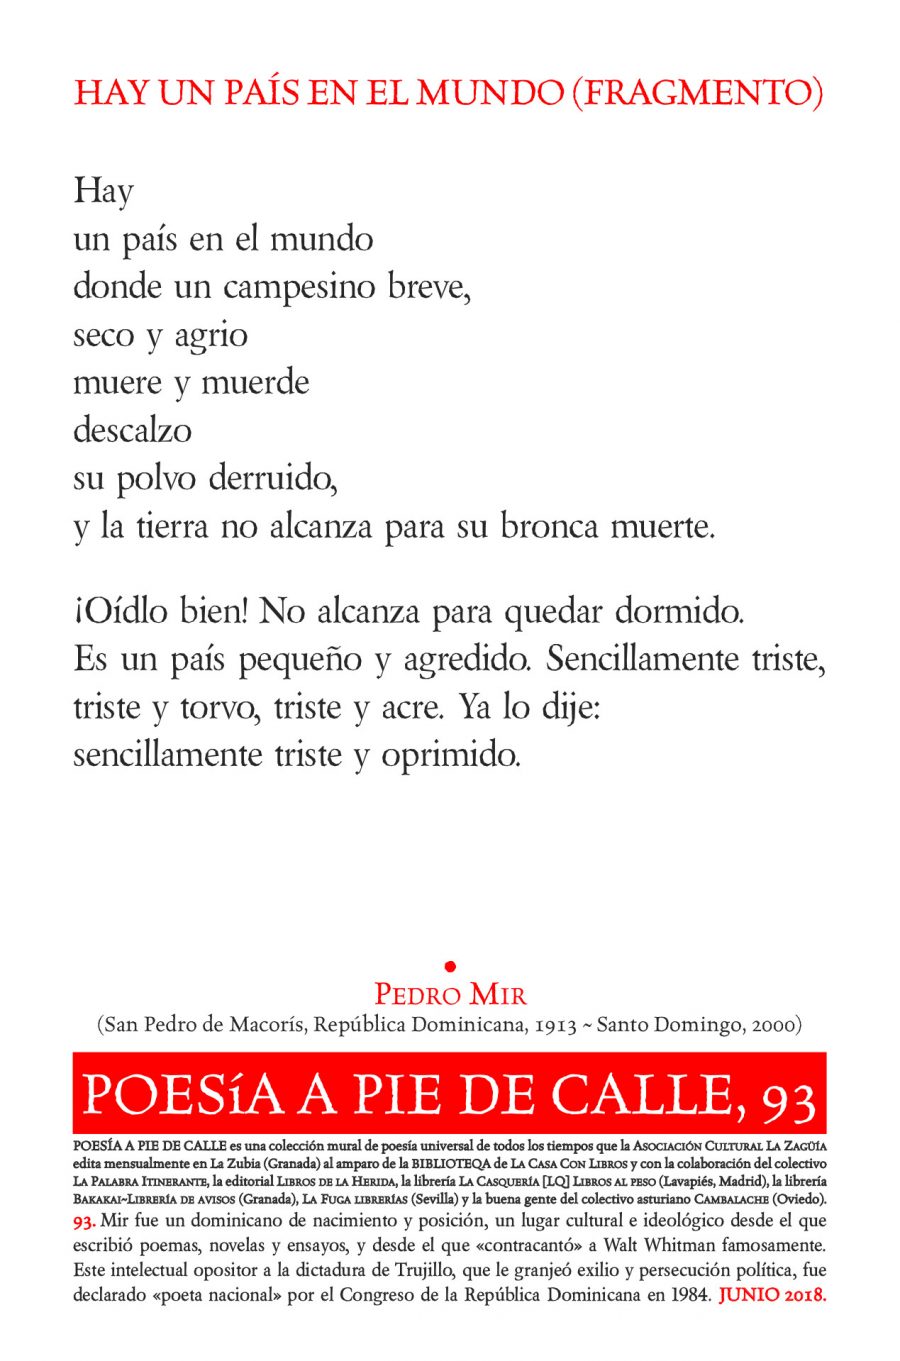 POESÍA A PIE DE CALLE, 93: HAY UN PAÍS EN EL MUNDO (FRAGMENTO), DE PEDRO MIR